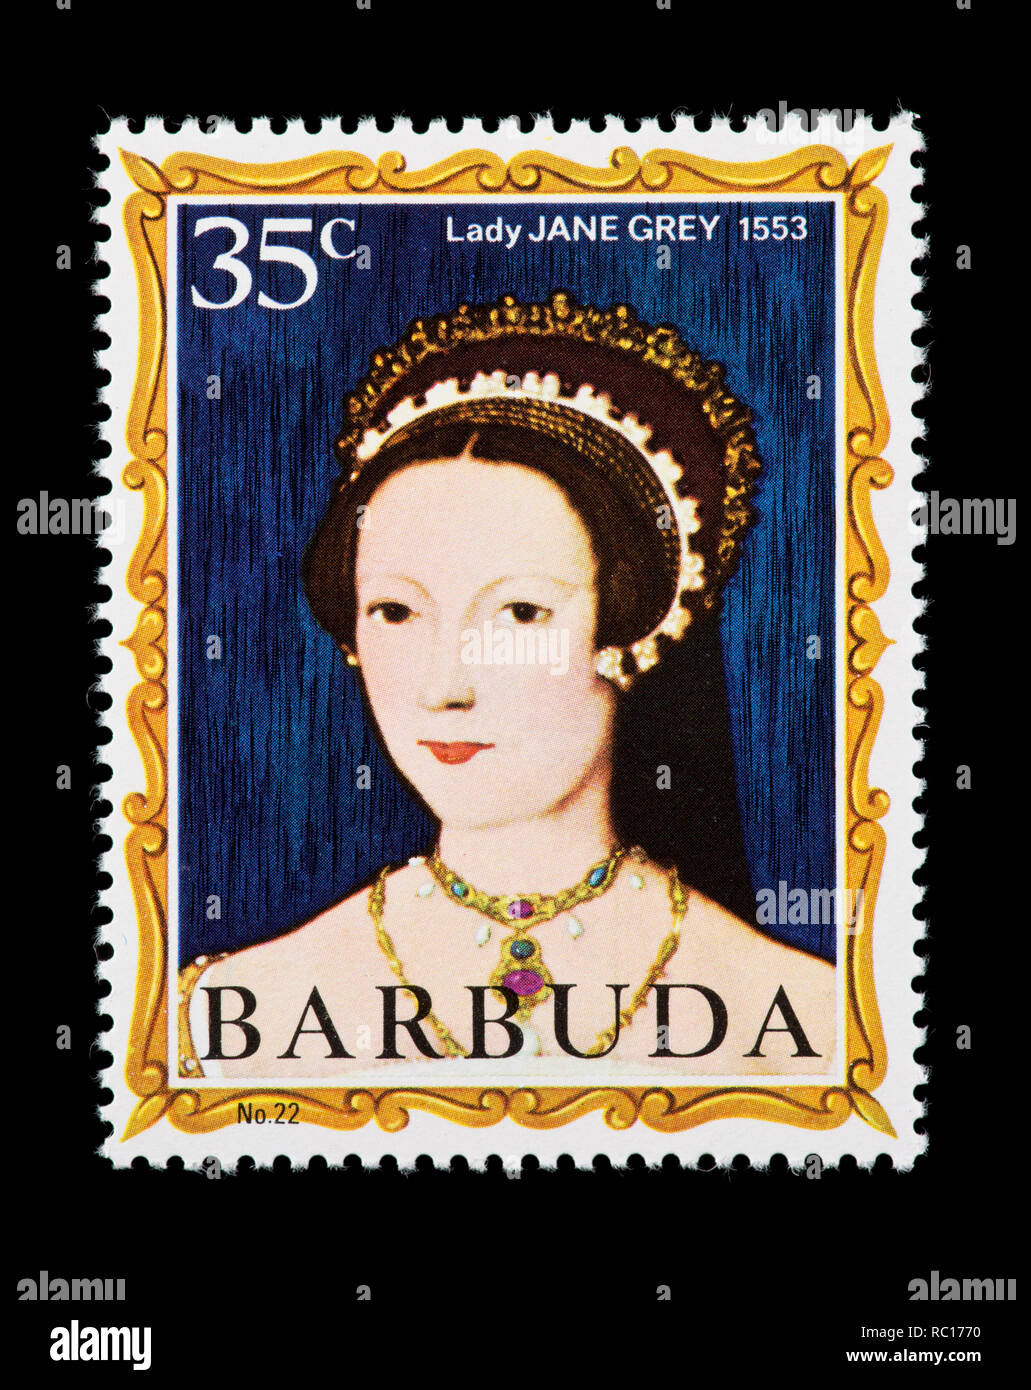 Timbre-poste de Barbuda représentant Lady Jane Grey, ancienne reine de Grande-Bretagne. Banque D'Images